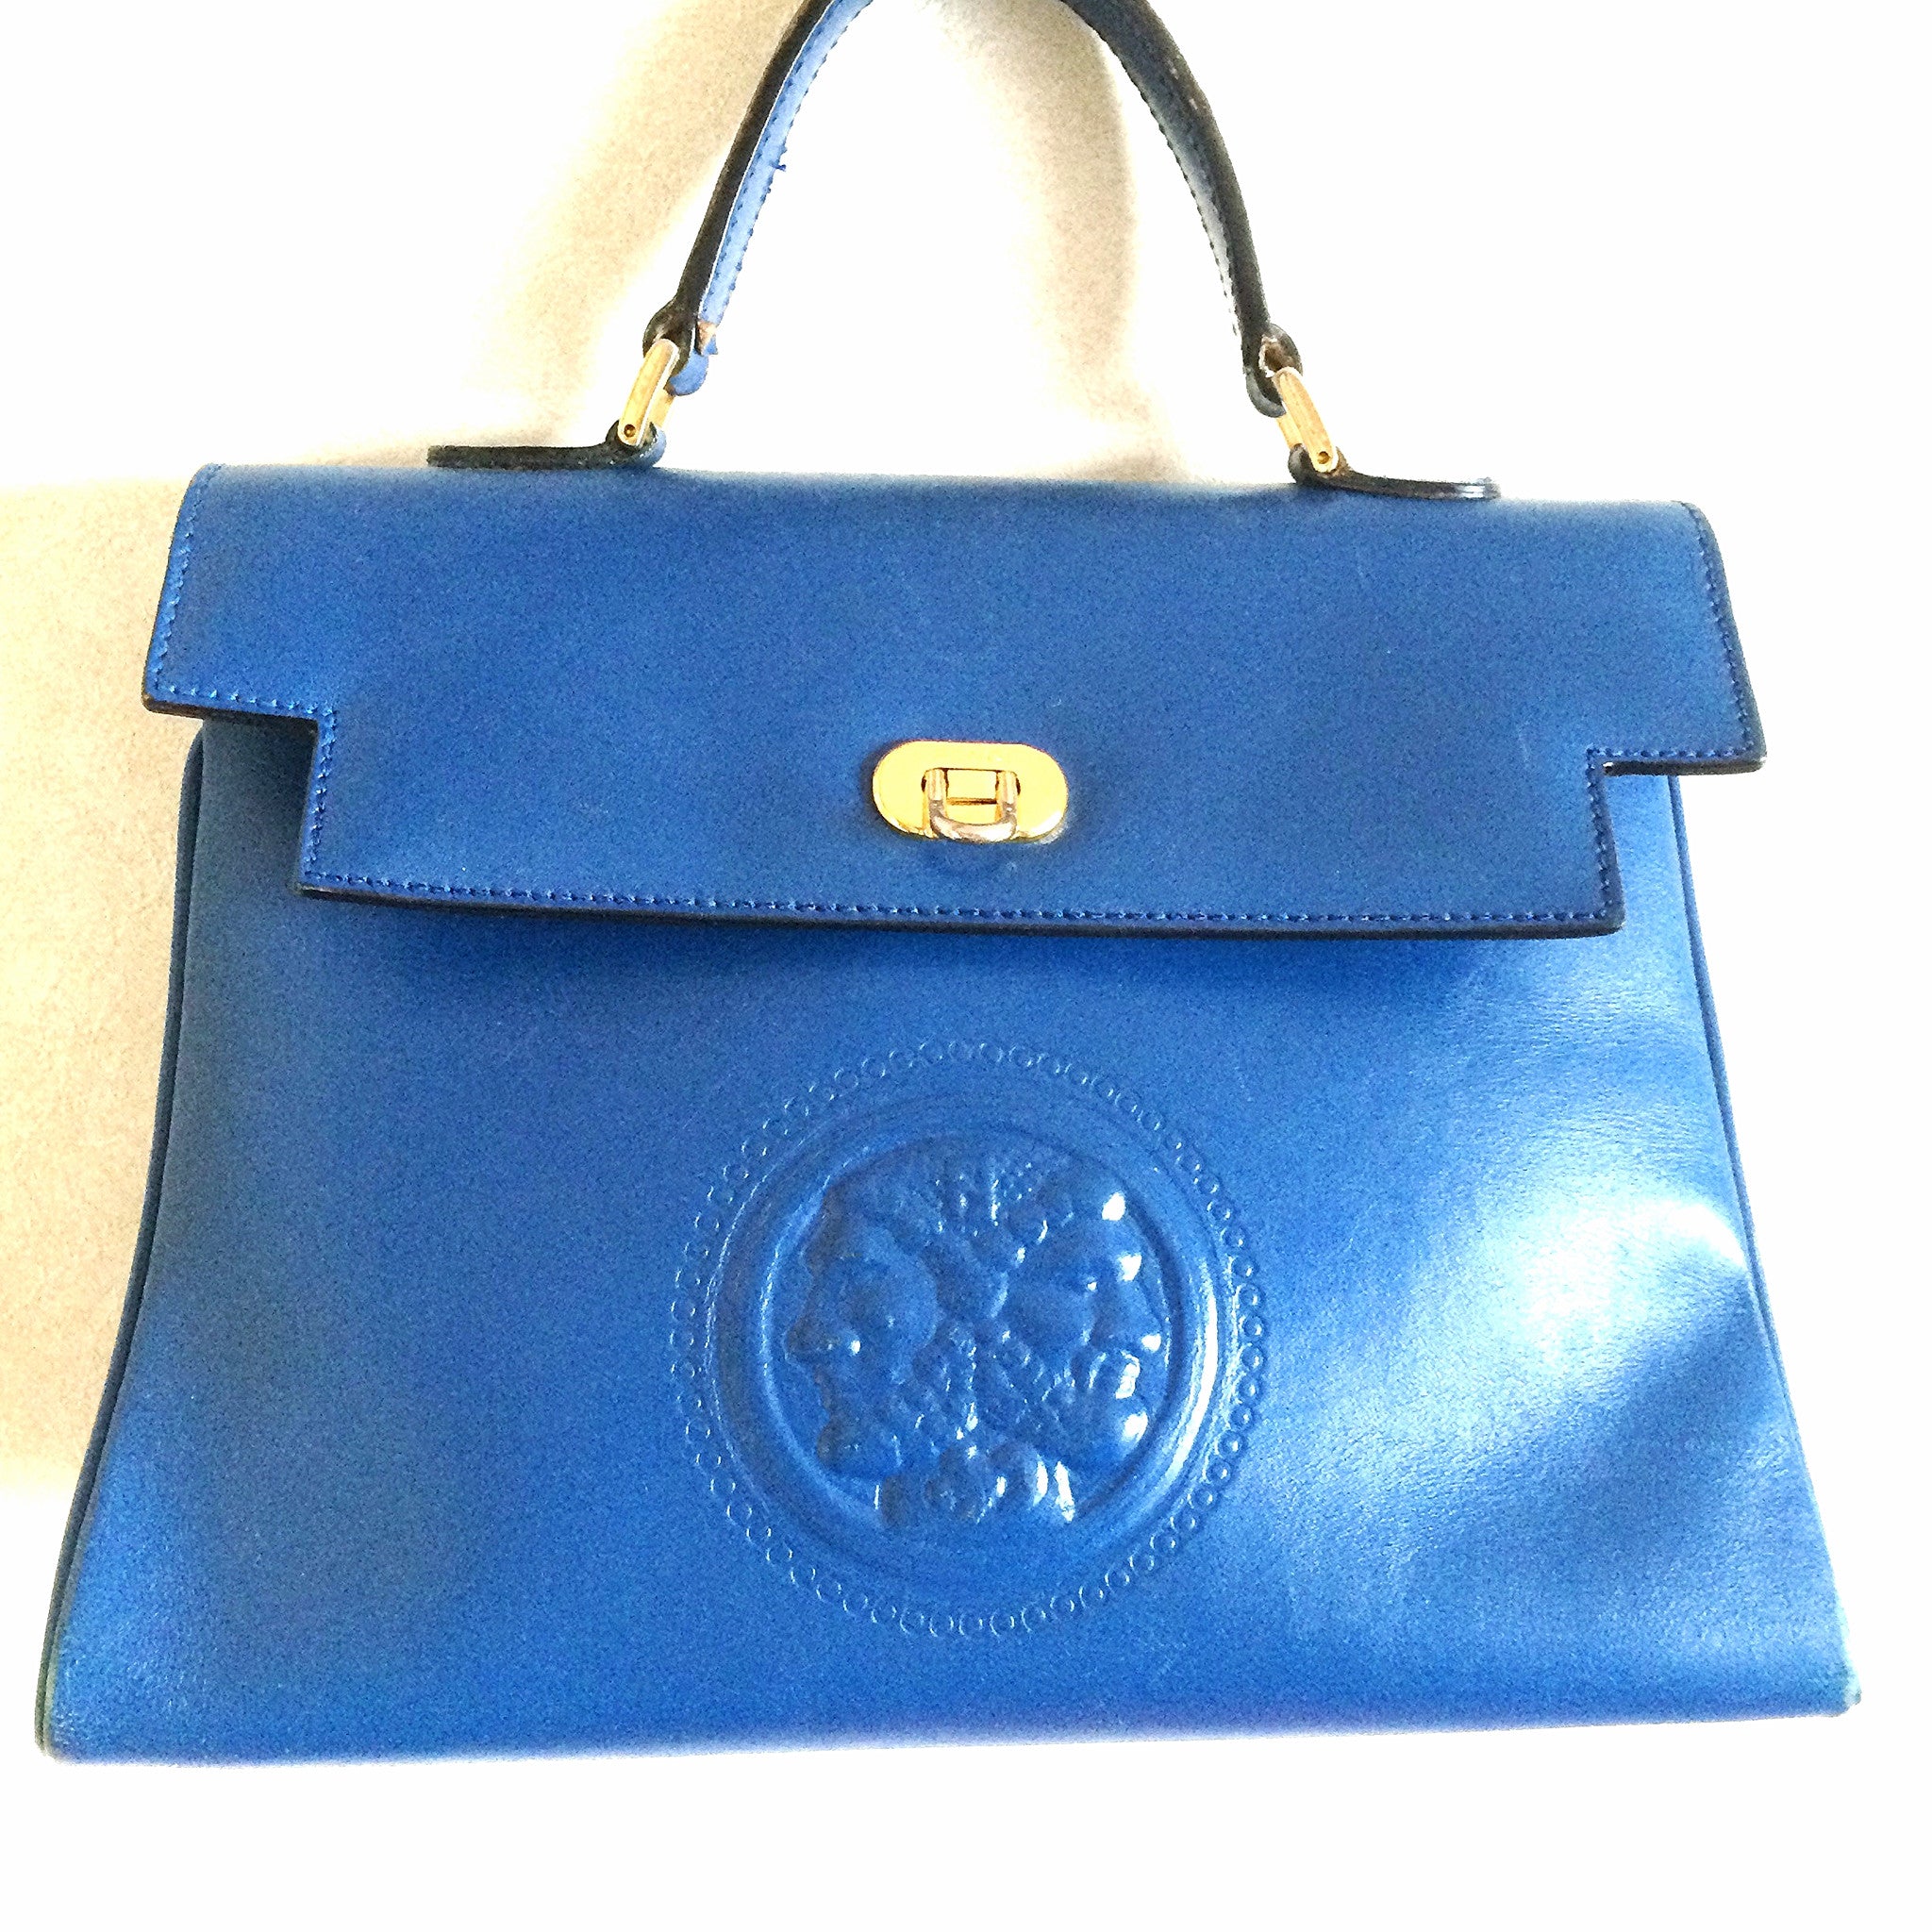 Vintage FENDI blue leather classic kelly style handbag with iconic Jan – eNdApPi ***where you ...